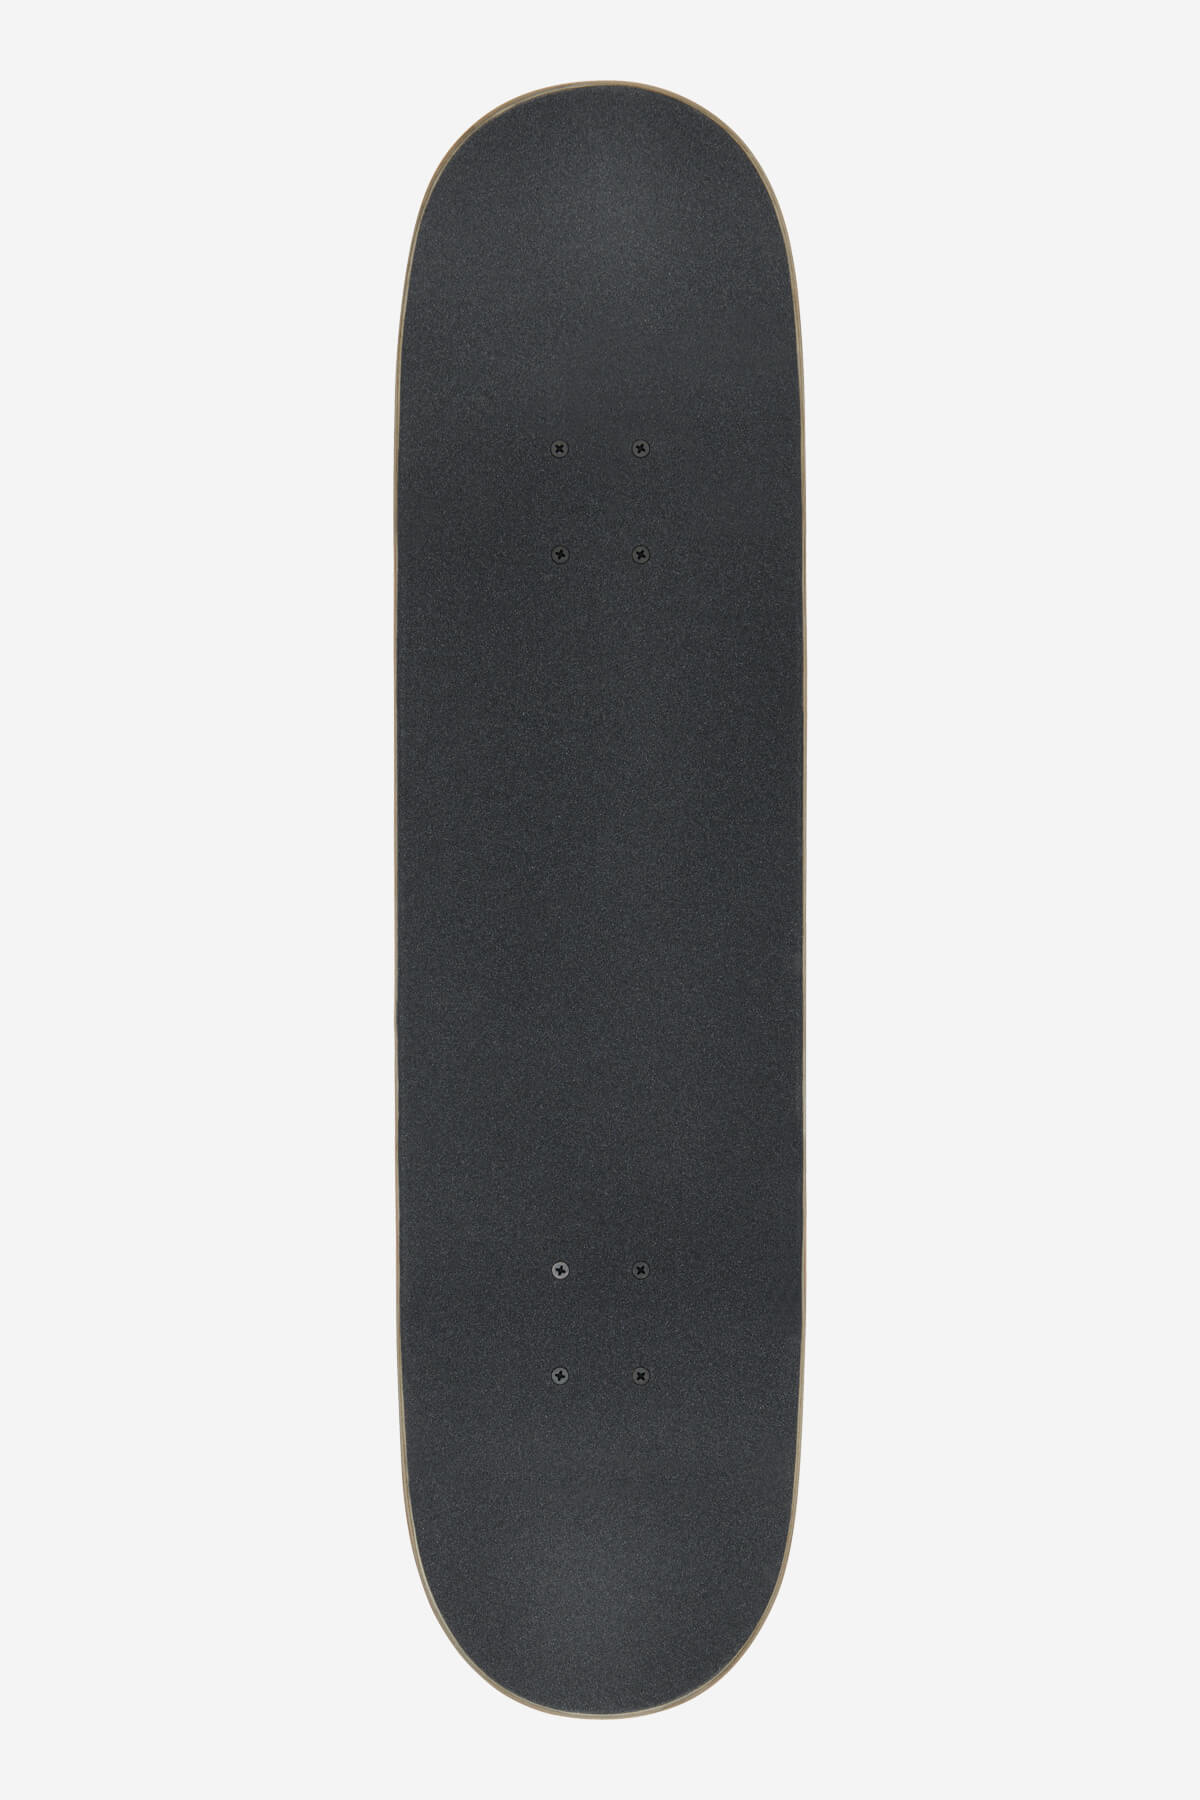 Globe - Goodstock - Gunmetal - 8.25" complet Skateboard